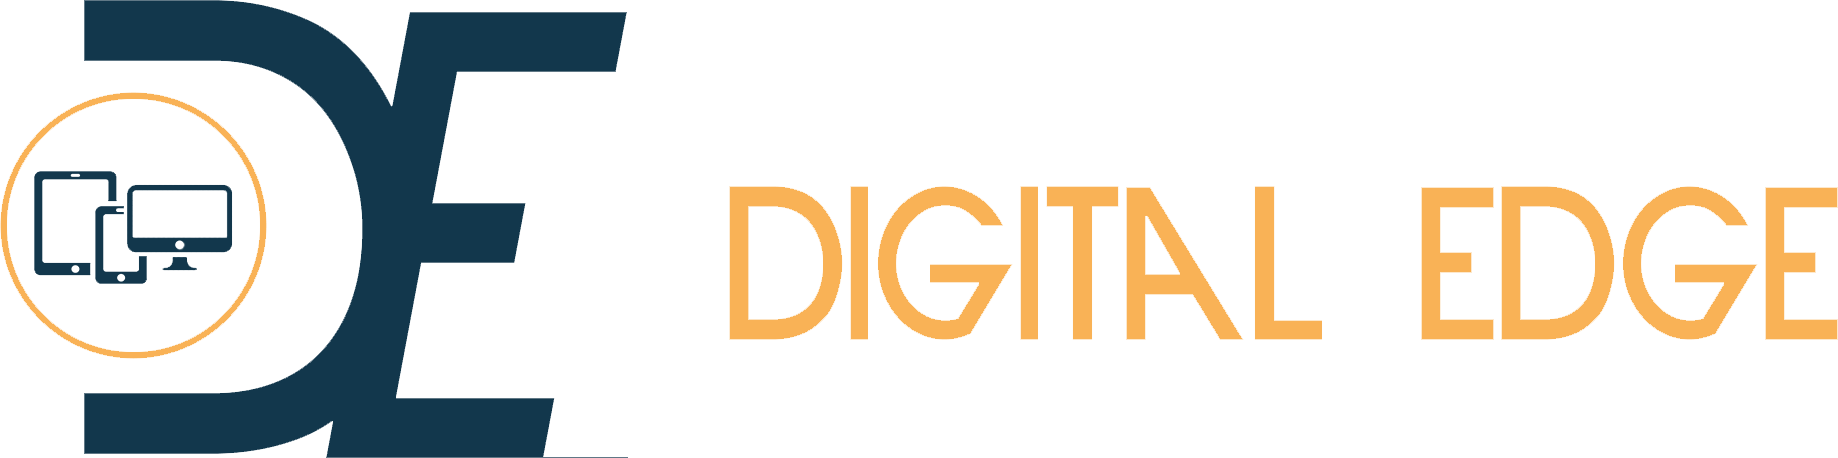 Digital Edge SARL logo